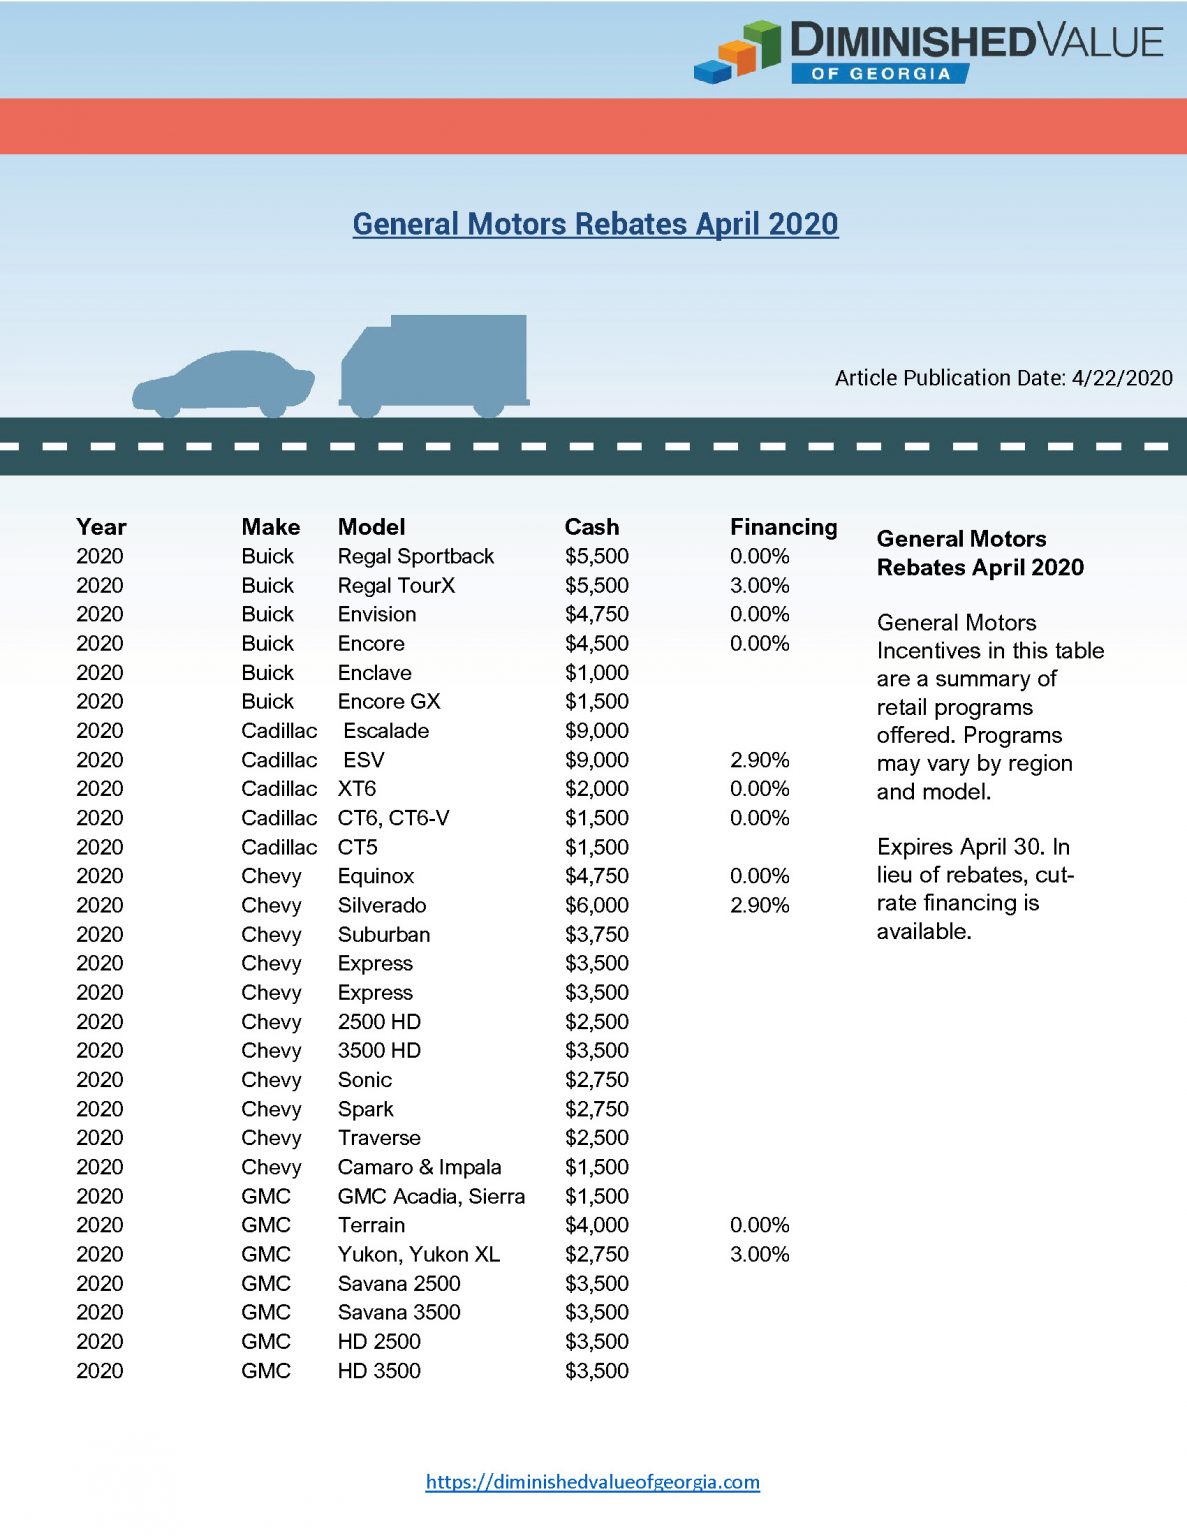 General Motors Rebate